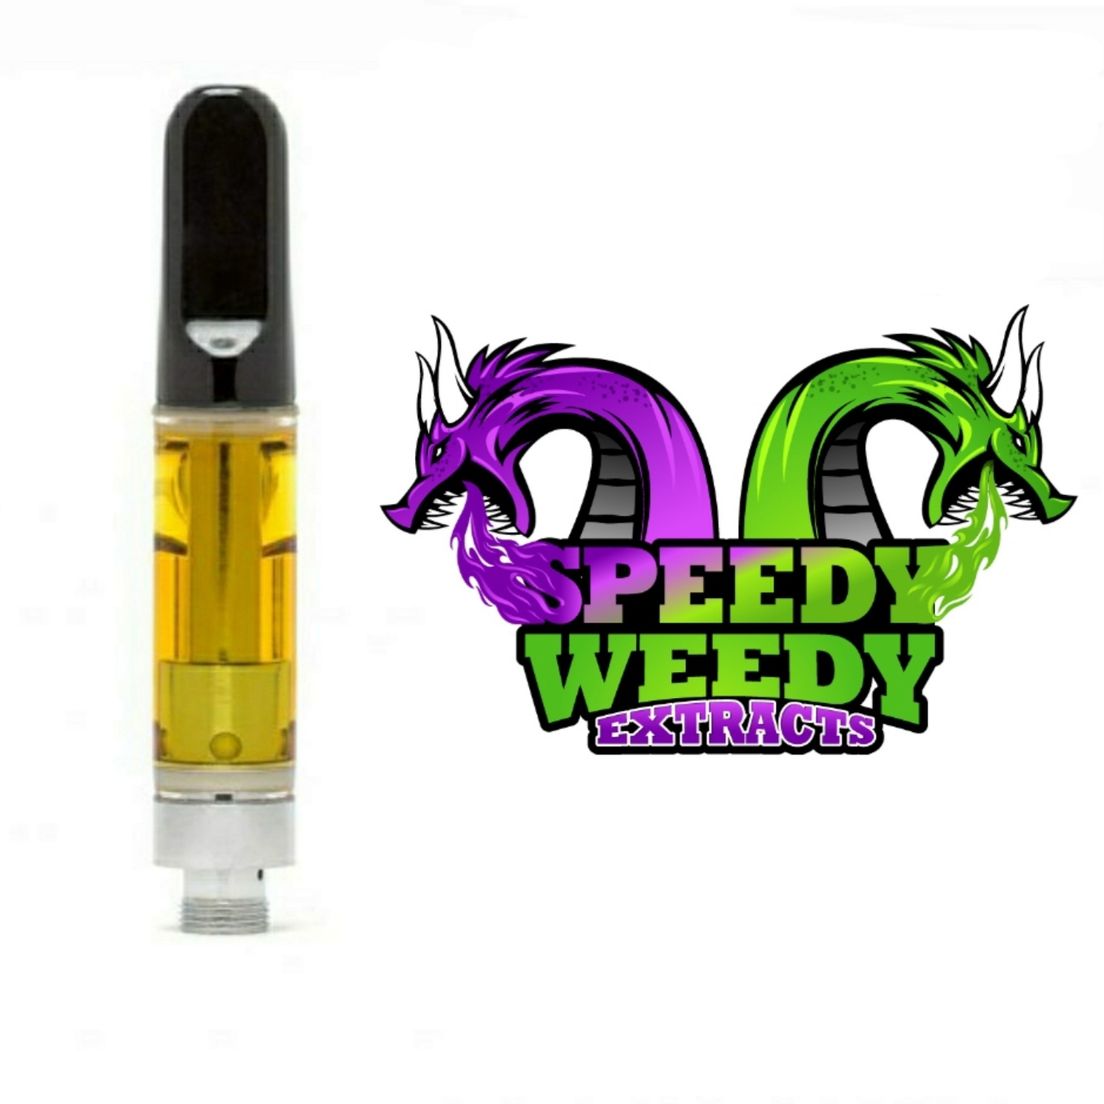 1. Speedy Weedy 1g THC Vape Cartridge - Ghost OG (I)